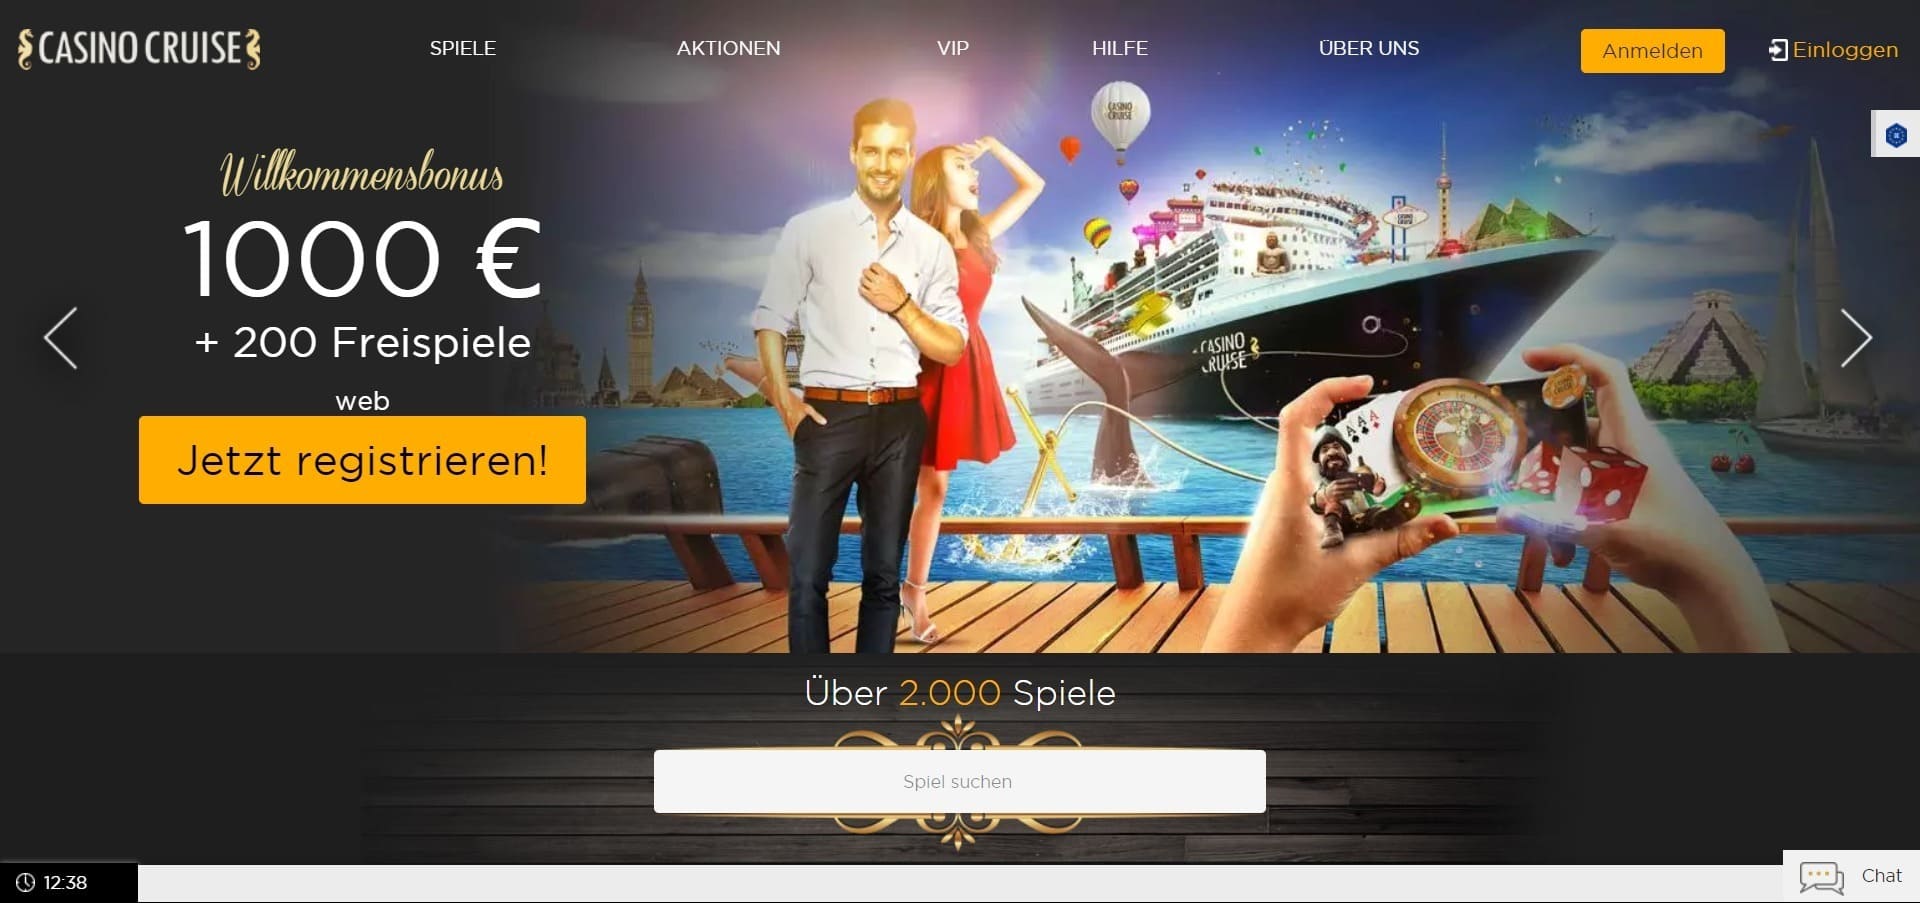 Offizielle Website der Casino Cruise